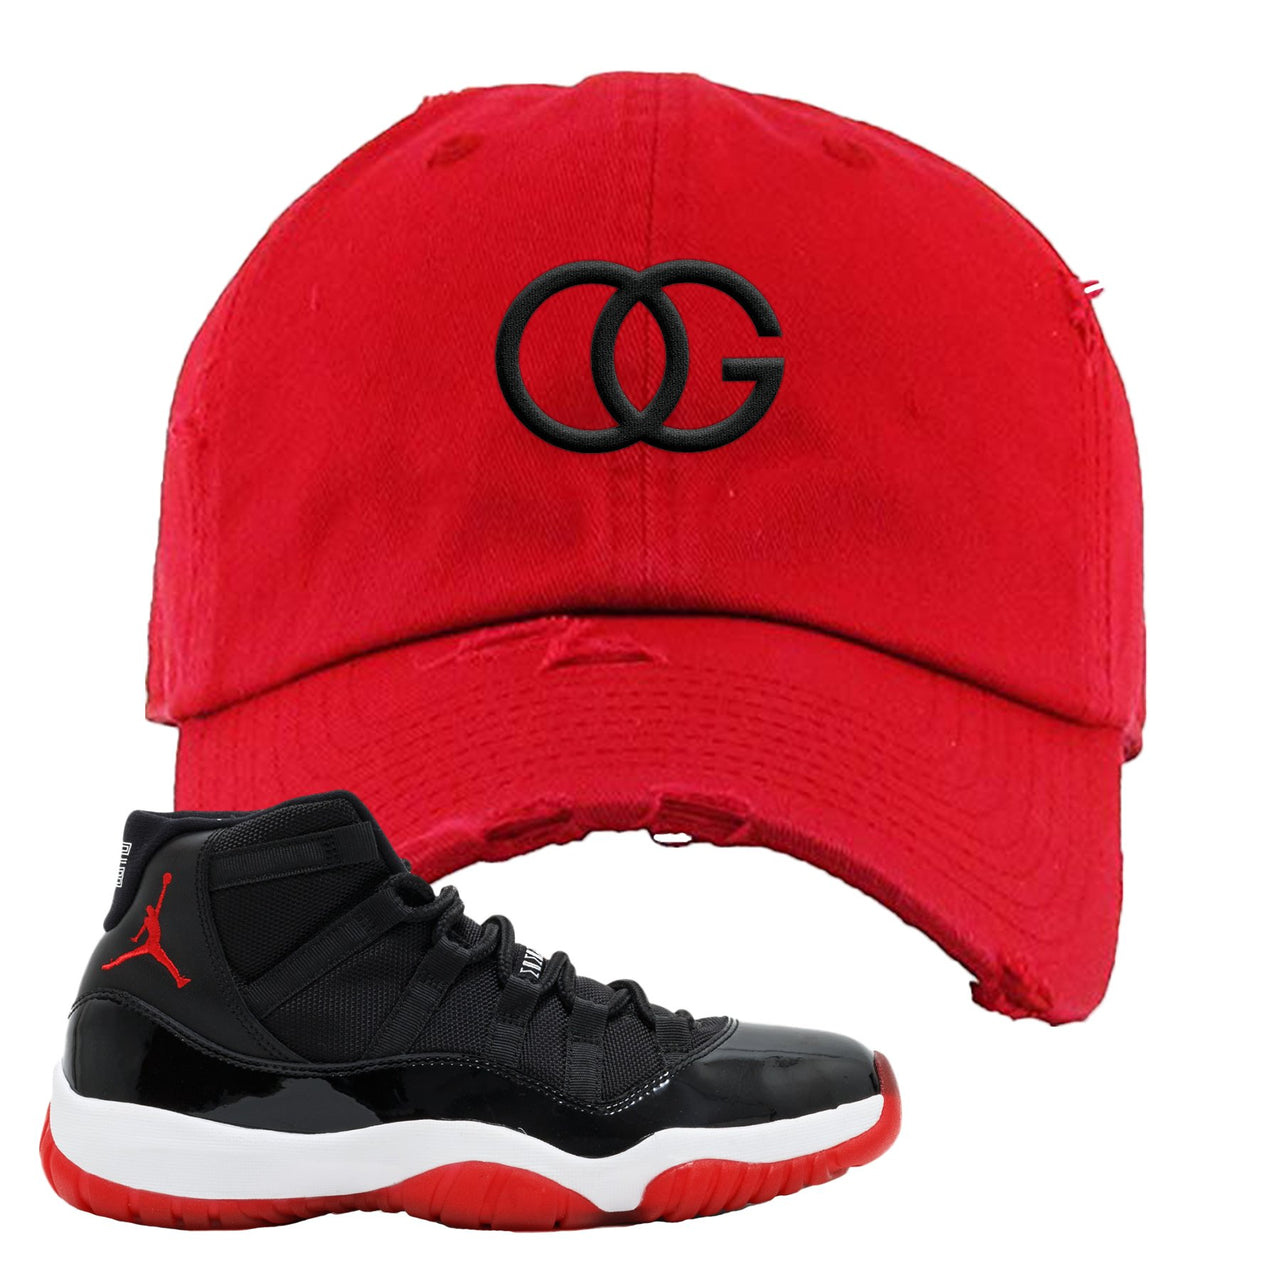 Jordan 11 Bred OG Red Sneaker Hook Up Distressed Dad Hat